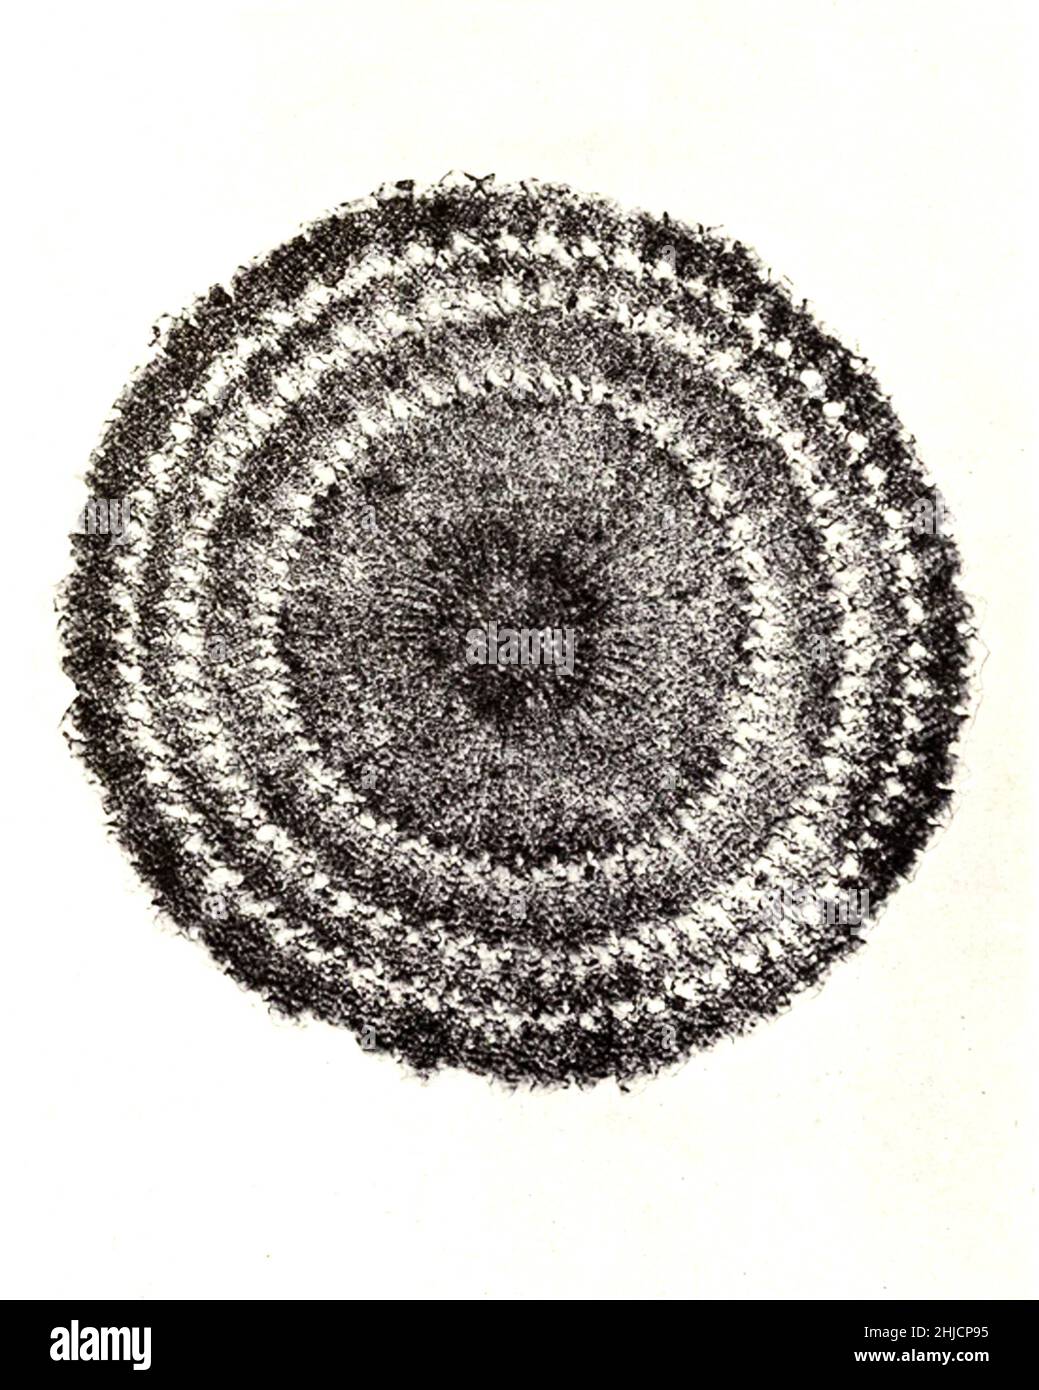 Wirbelsäulenabschnitt des Echinus (Seeigel). Vergrößerung: 60fach. Fotomikrograph von Arthur E Smith in den frühen 1900er Jahren, mit einem kombinierten Mikroskop und Kamera. 1904 stellte die Royal Society in London eine Reihe von Smiths Fotomikrographen der Öffentlichkeit aus. Sie wurden später 1909 in einem Buch mit dem Titel "Nature Through Microscope & Camera" veröffentlicht. Sie waren die ersten Beispiele für die Photomikroskopie, die viele je gesehen hatten. Stockfoto